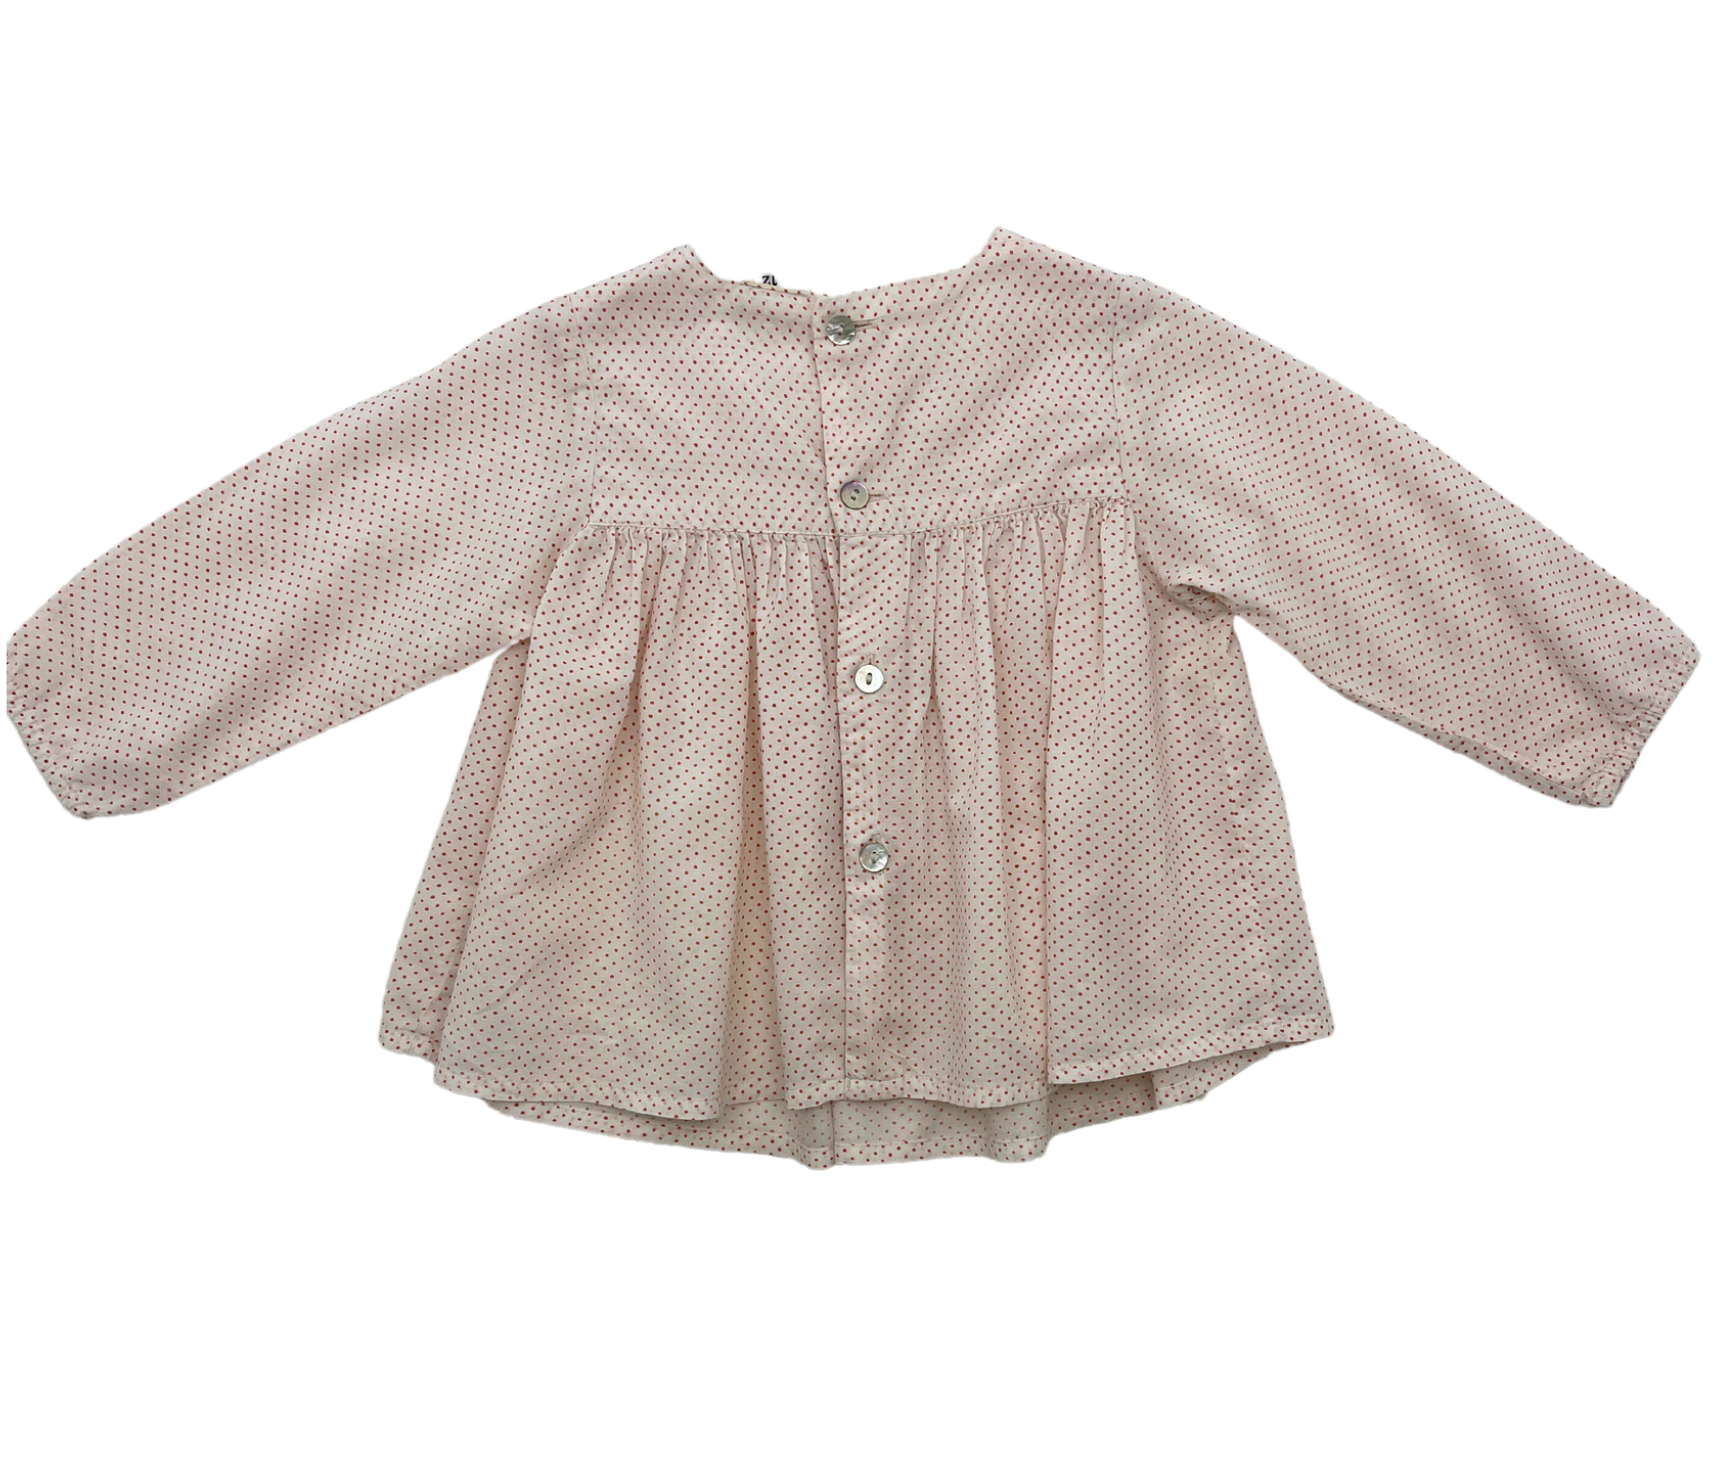 BONTON - Polka dot blouse - 1 year old